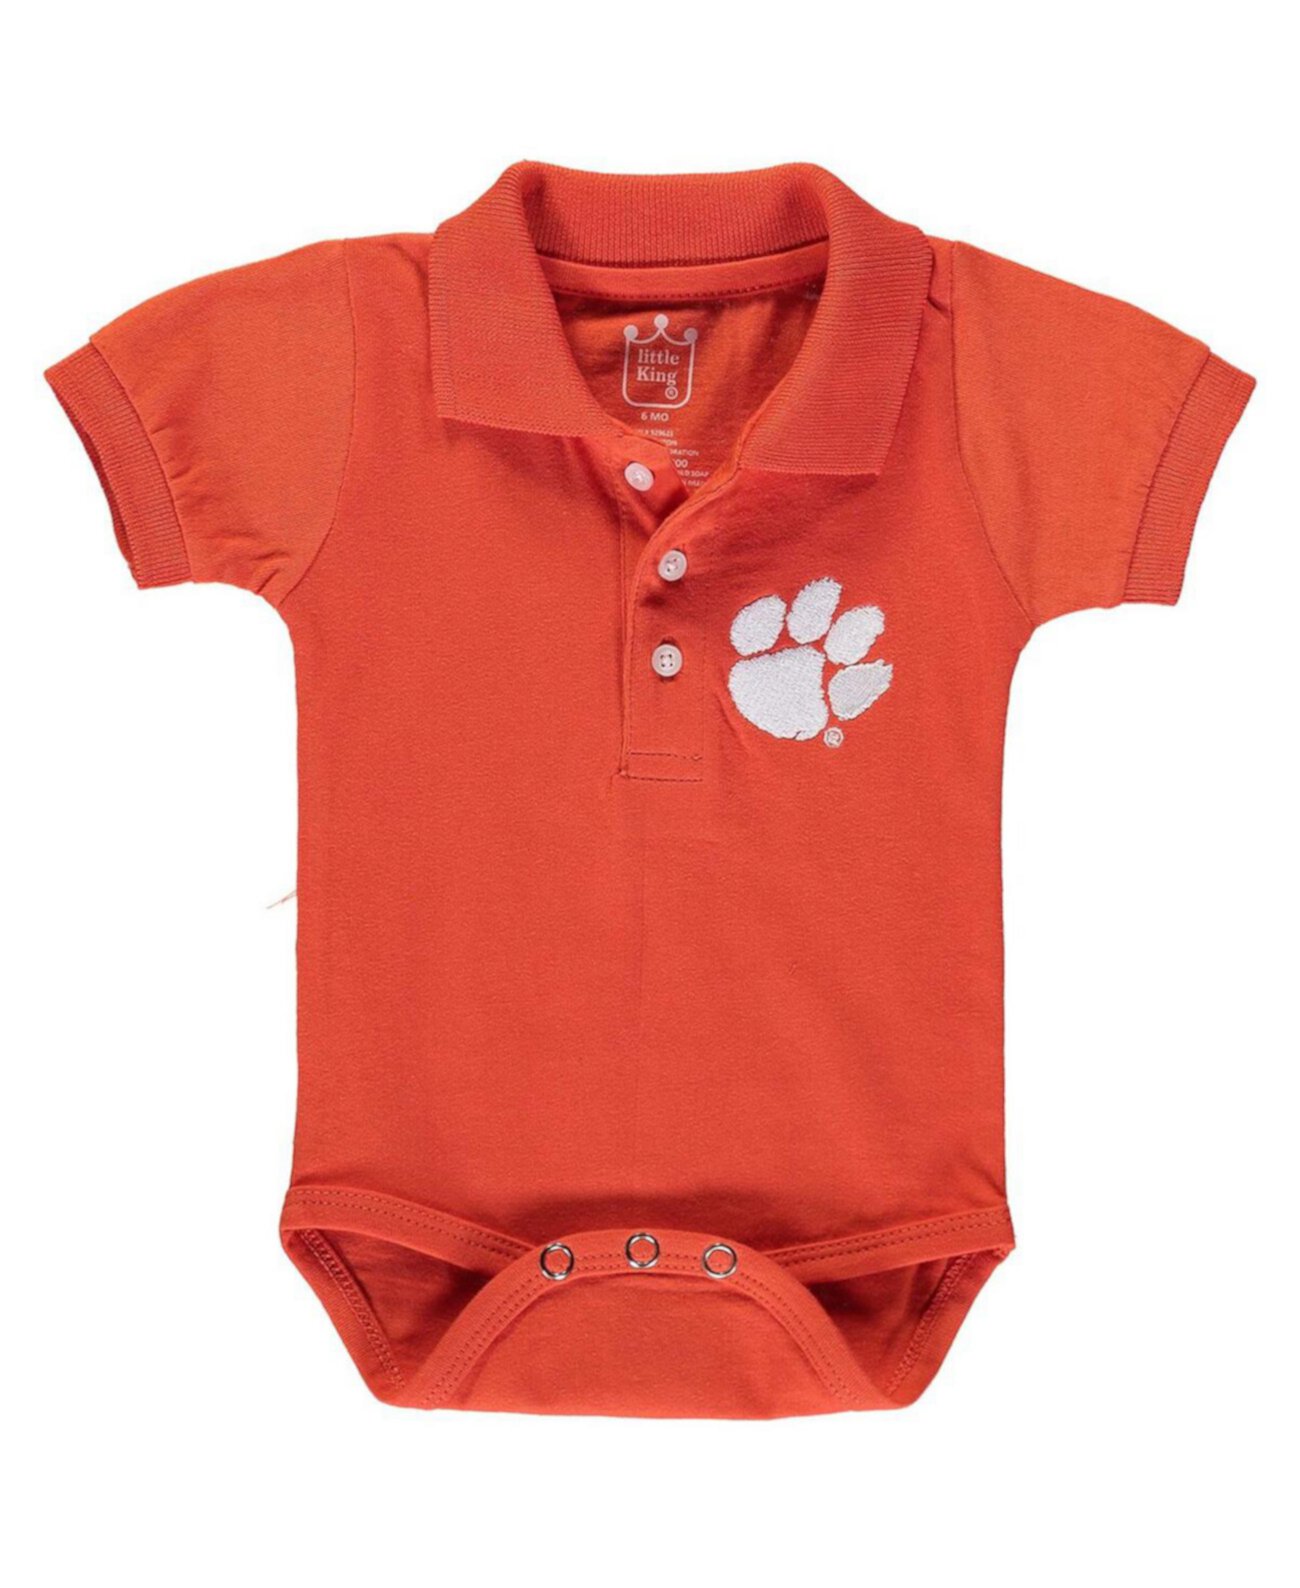 Оранжевое боди-поло Clemson Tigers для маленьких мальчиков и девочек Little King Apparel